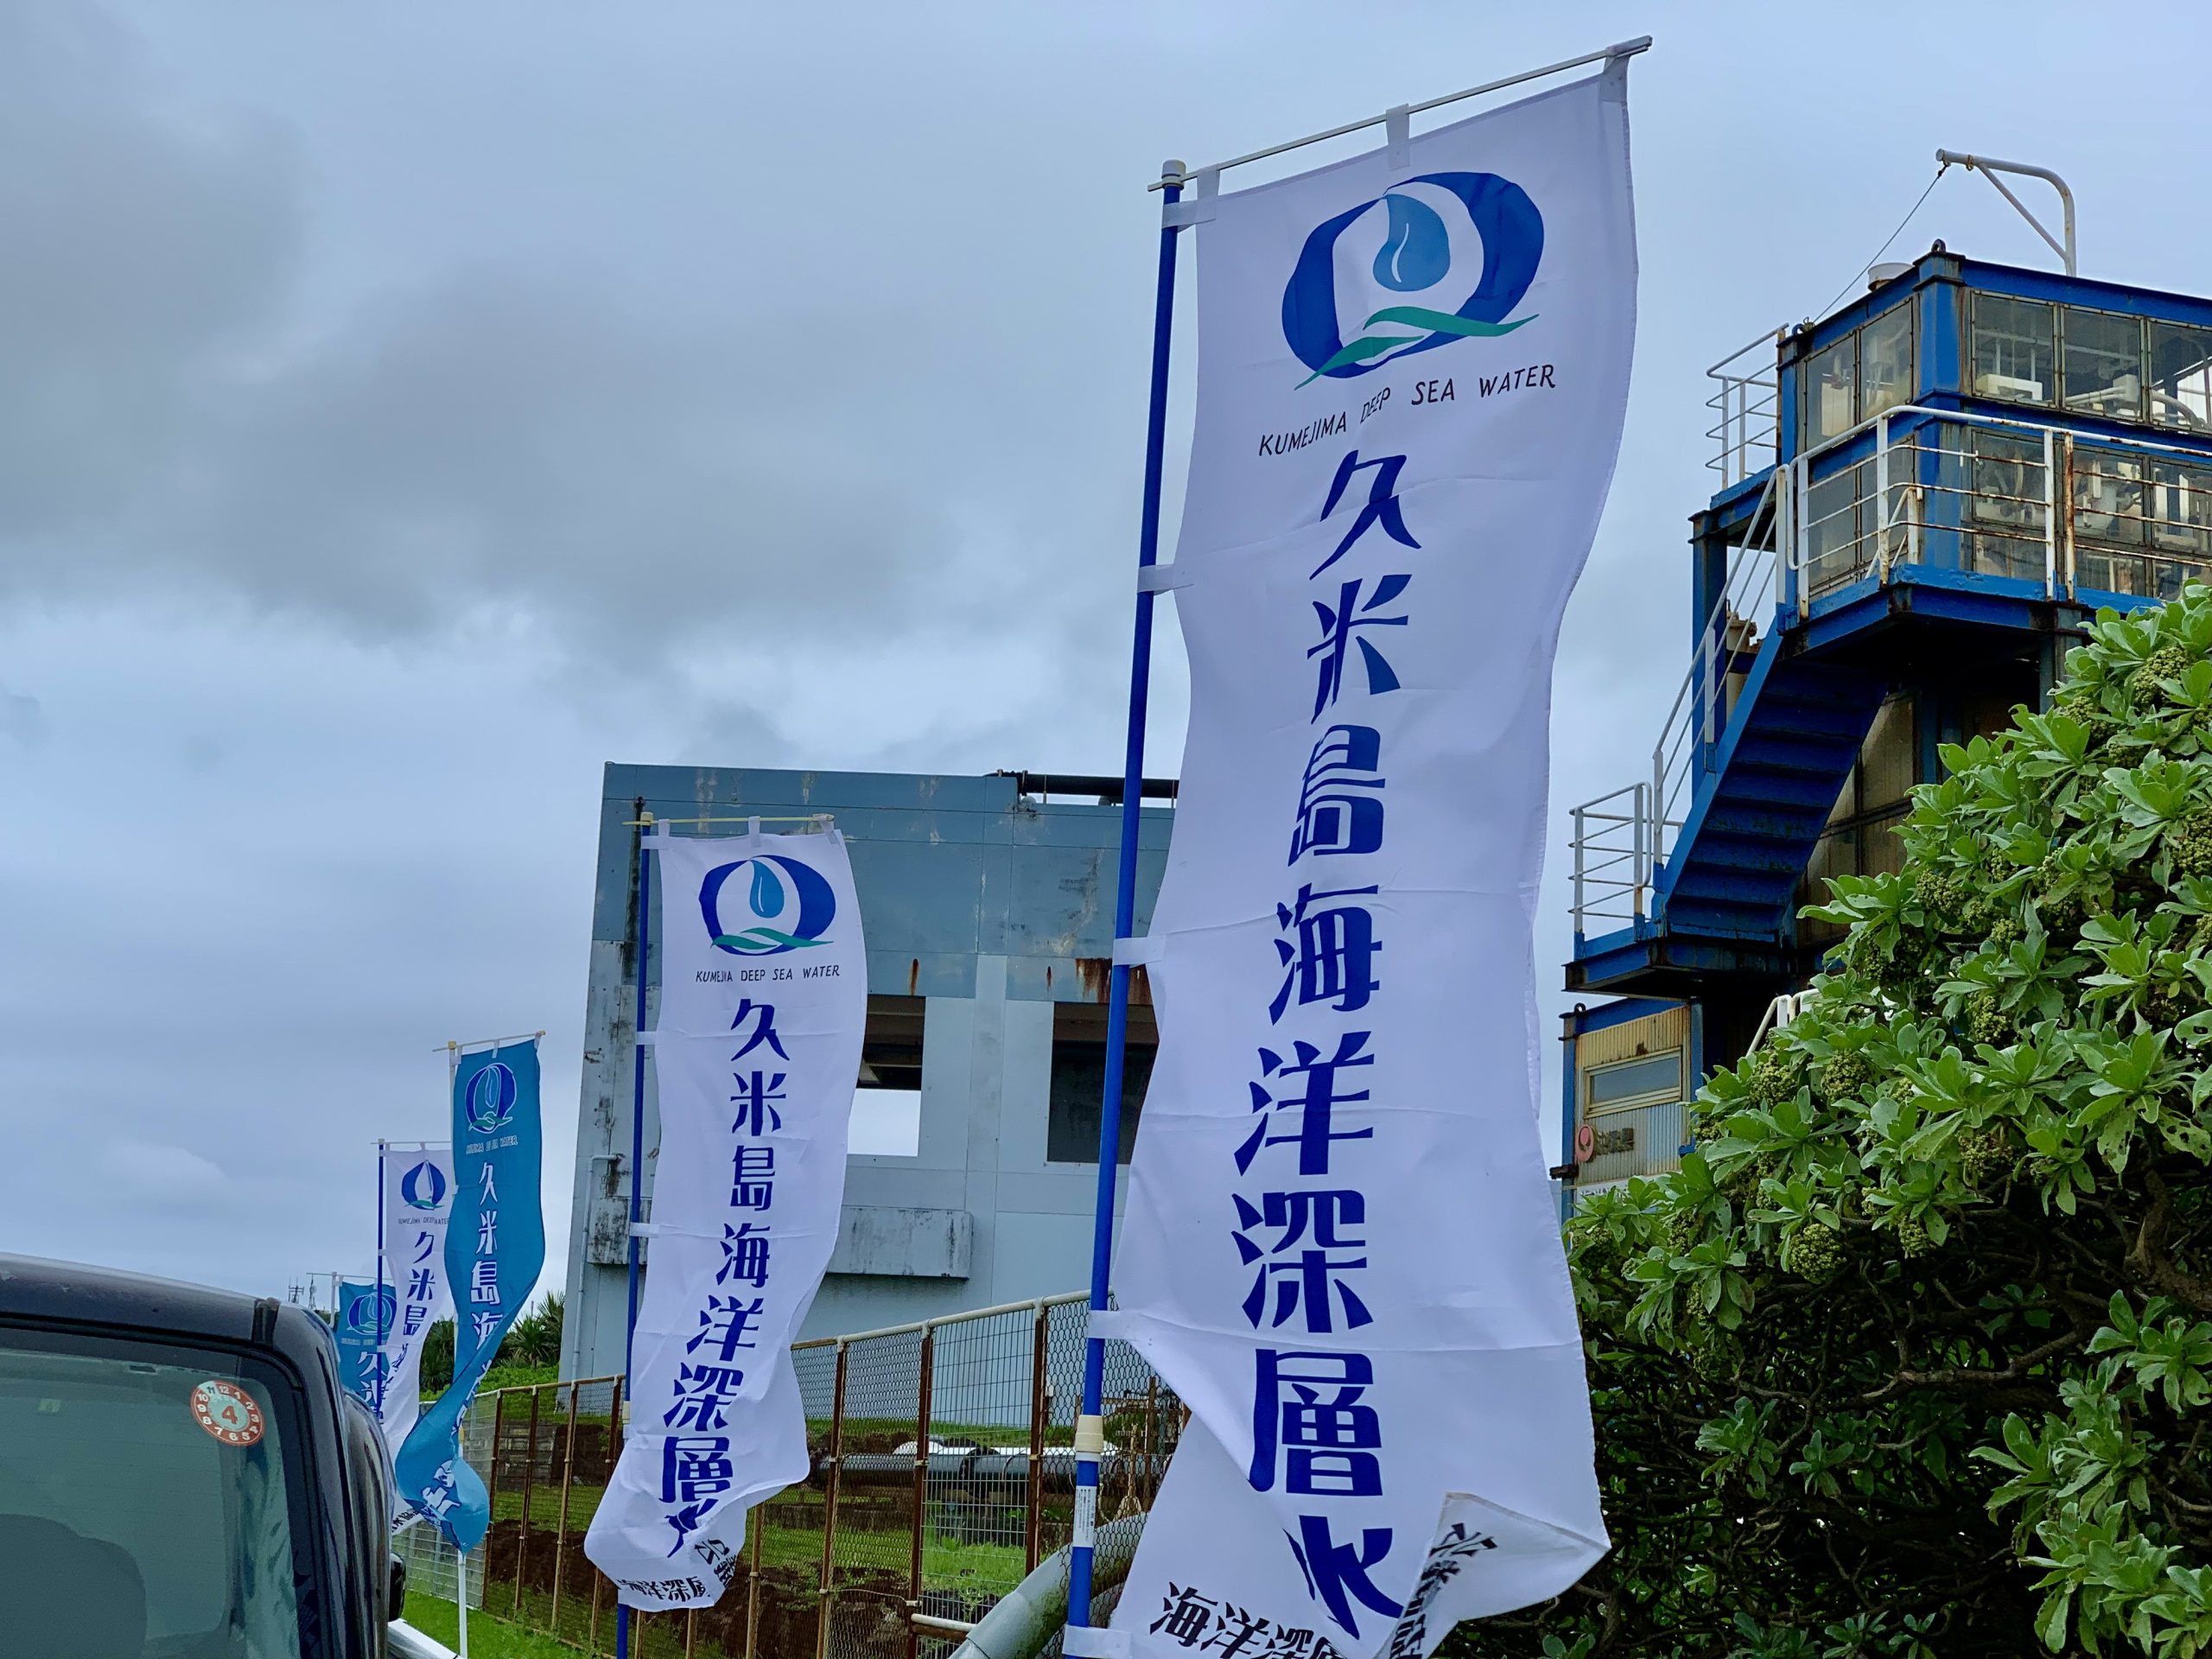 久米島のイベント 久米島海洋深層水の日 Seawaterdreamフェスティバル 久米島ブログライターズ